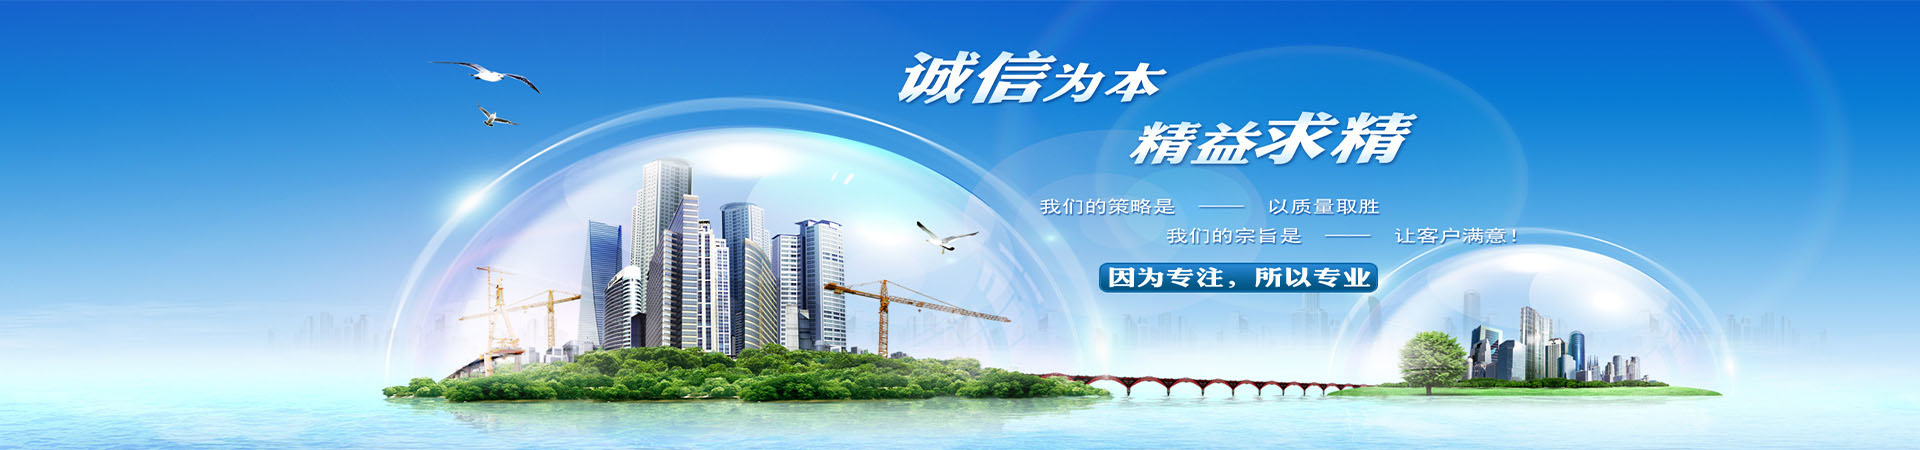 柴油发电机出租、重庆本地柴油发电机出租、重庆、重庆柴油发电机出租